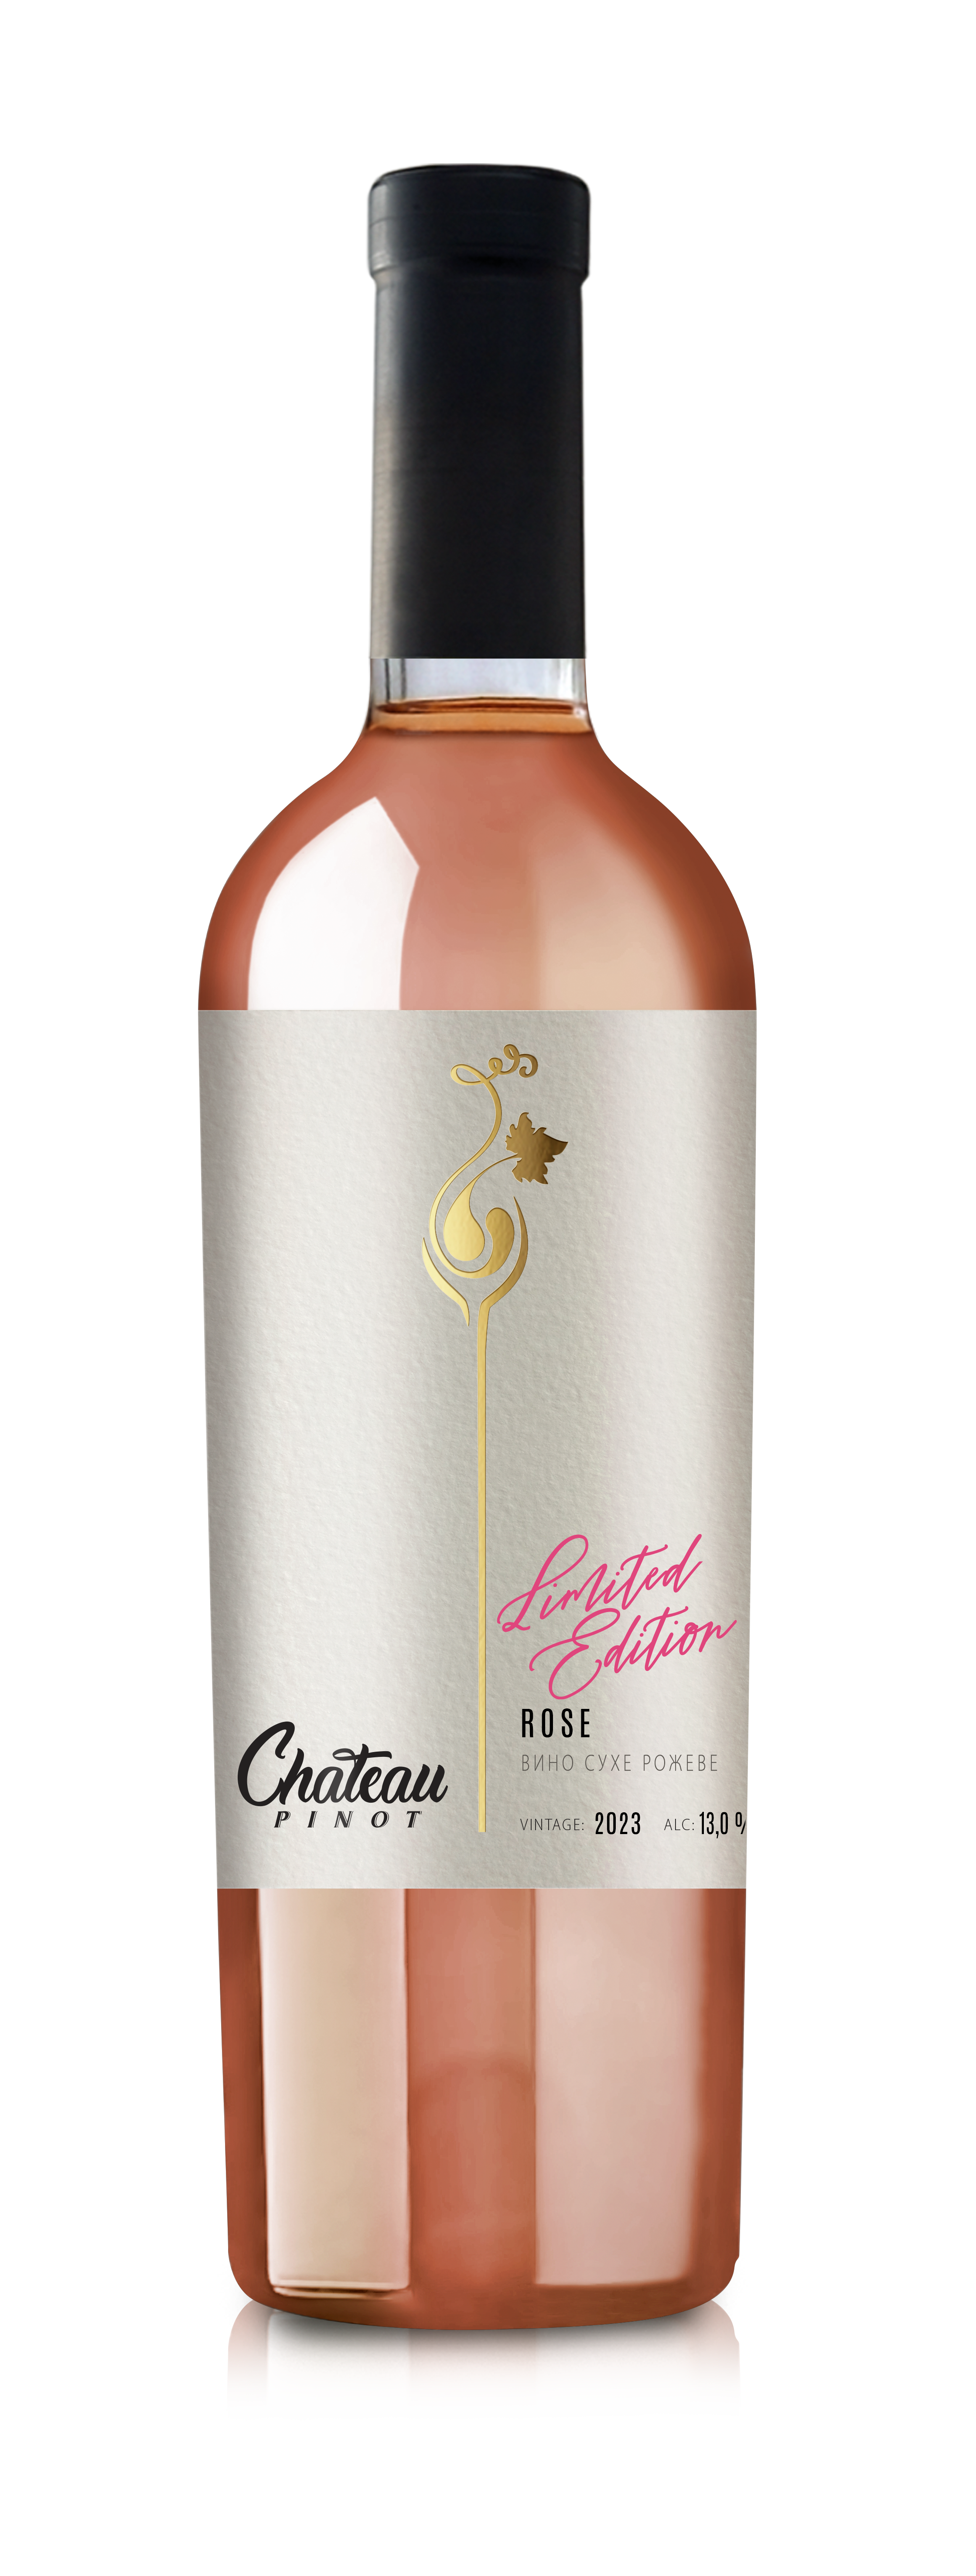 Rose Chateau Pinot Limited Edition | Розе Шато Піно Лімітований Випуск